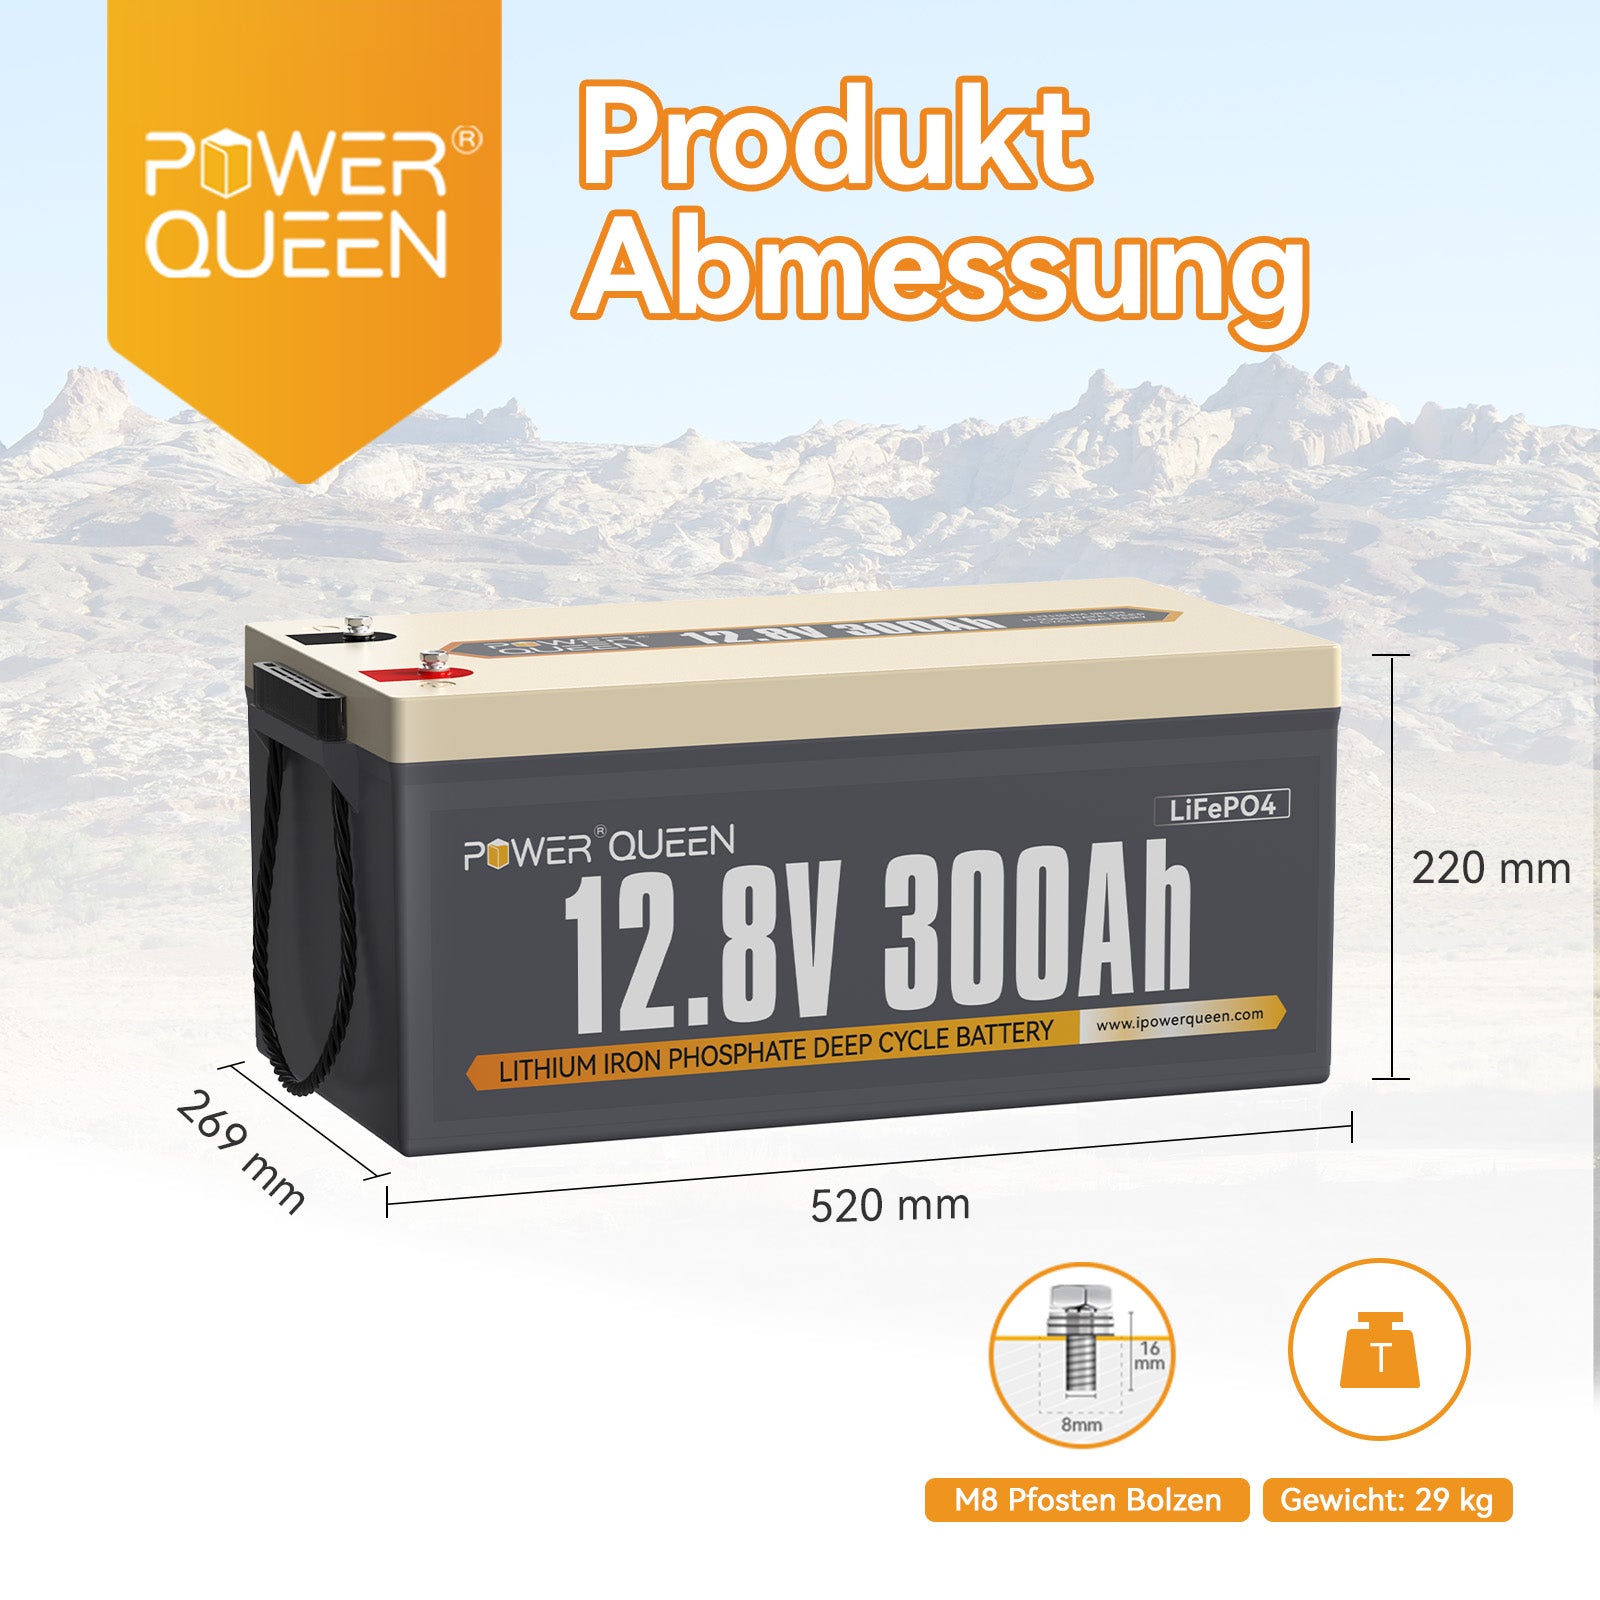 【0% IVA】Batería LiFePO4 Power Queen 12.8V 300Ah, BMS 200A integrado